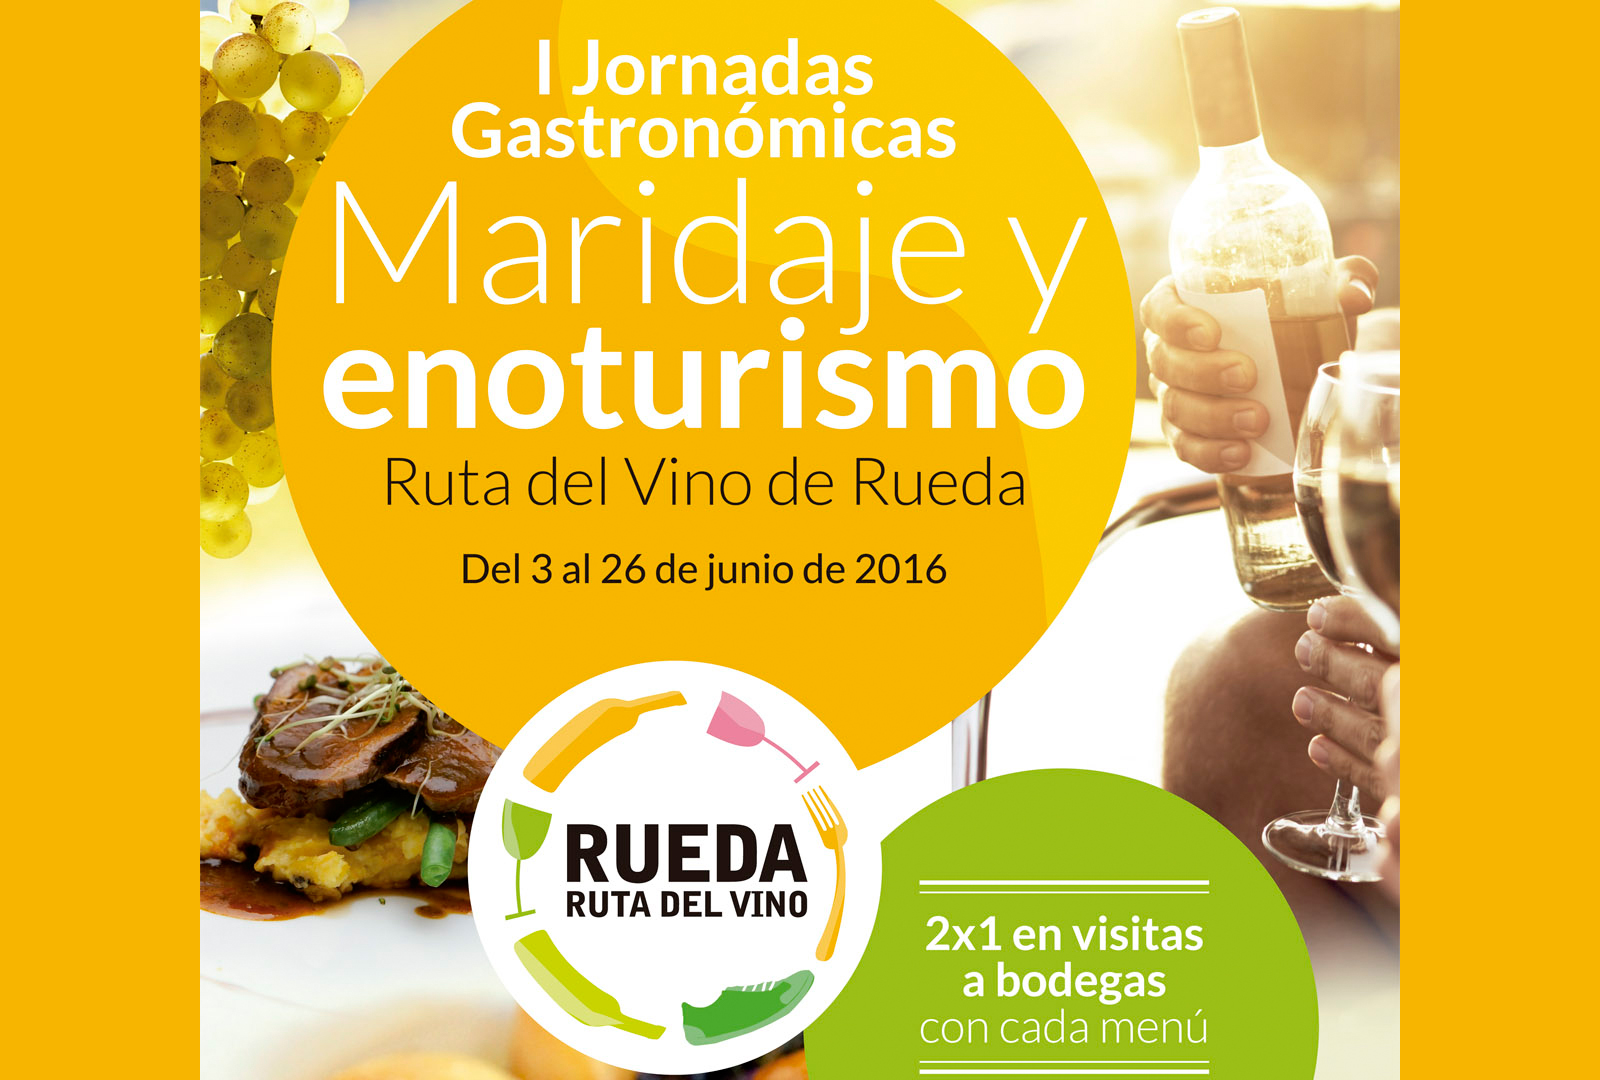 Rueda celebra sus I Jornadas Gastronómicas. - VINOS DIFERENTES